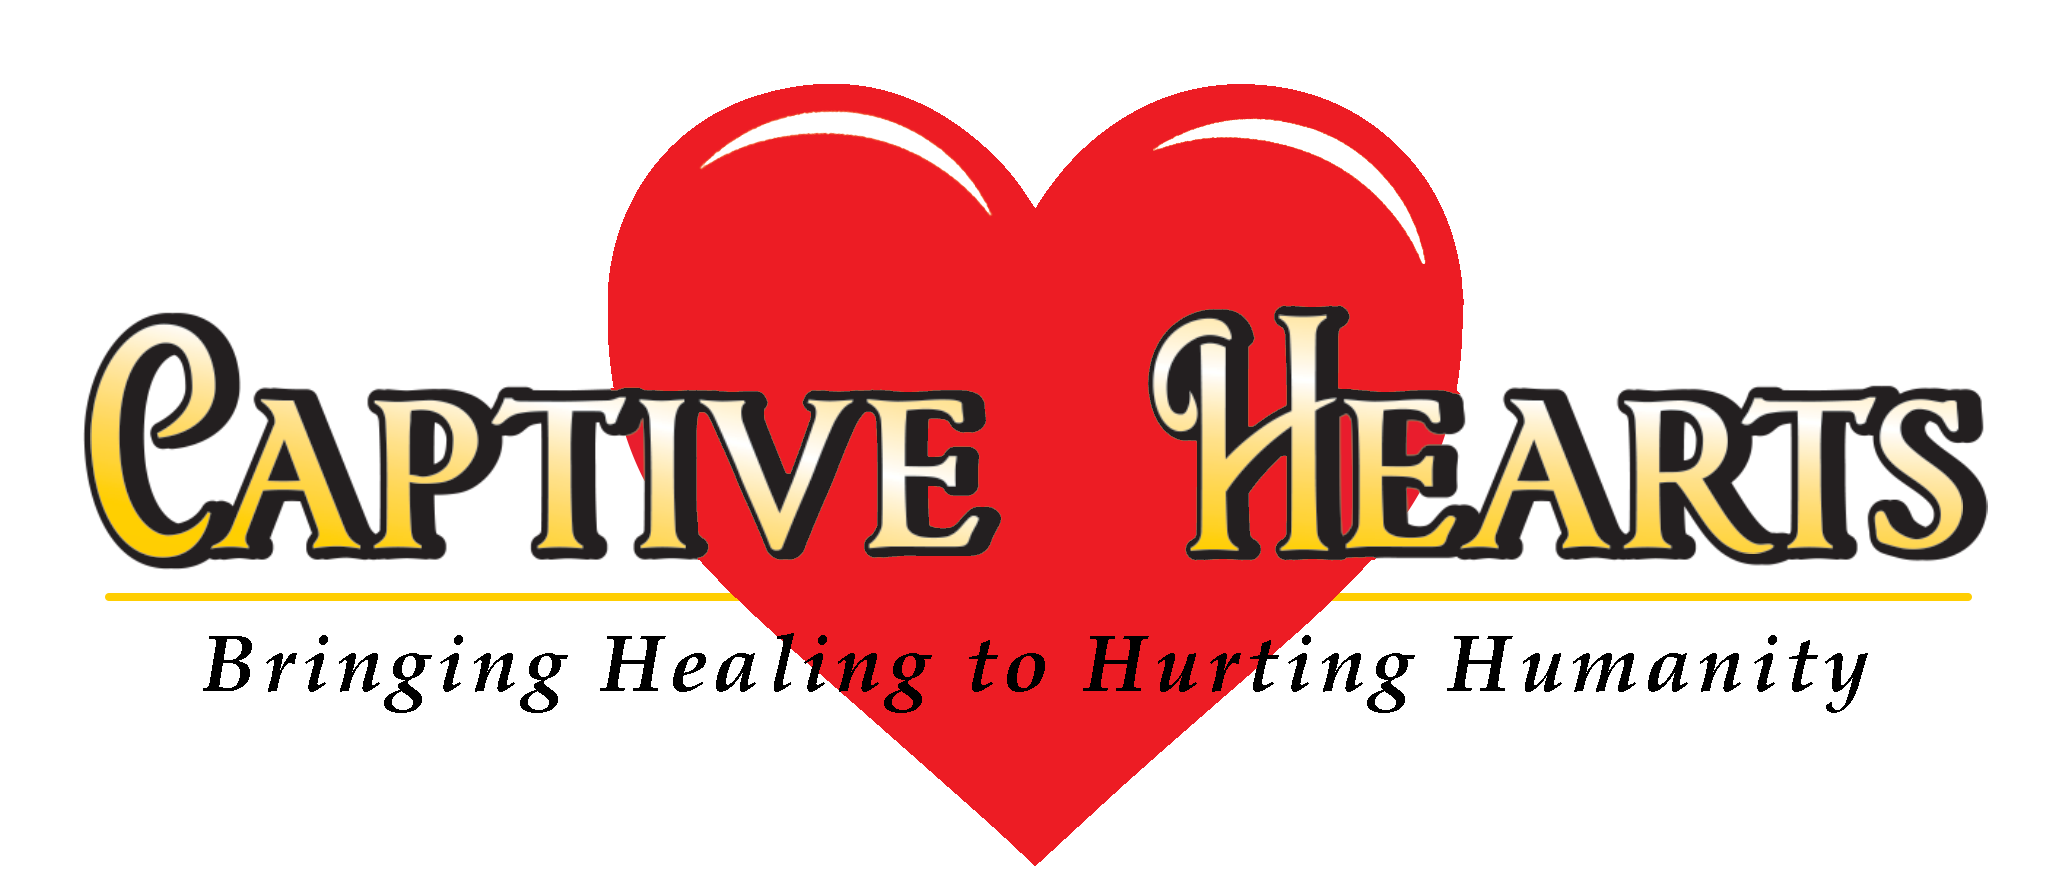 Captive Hearts Logo